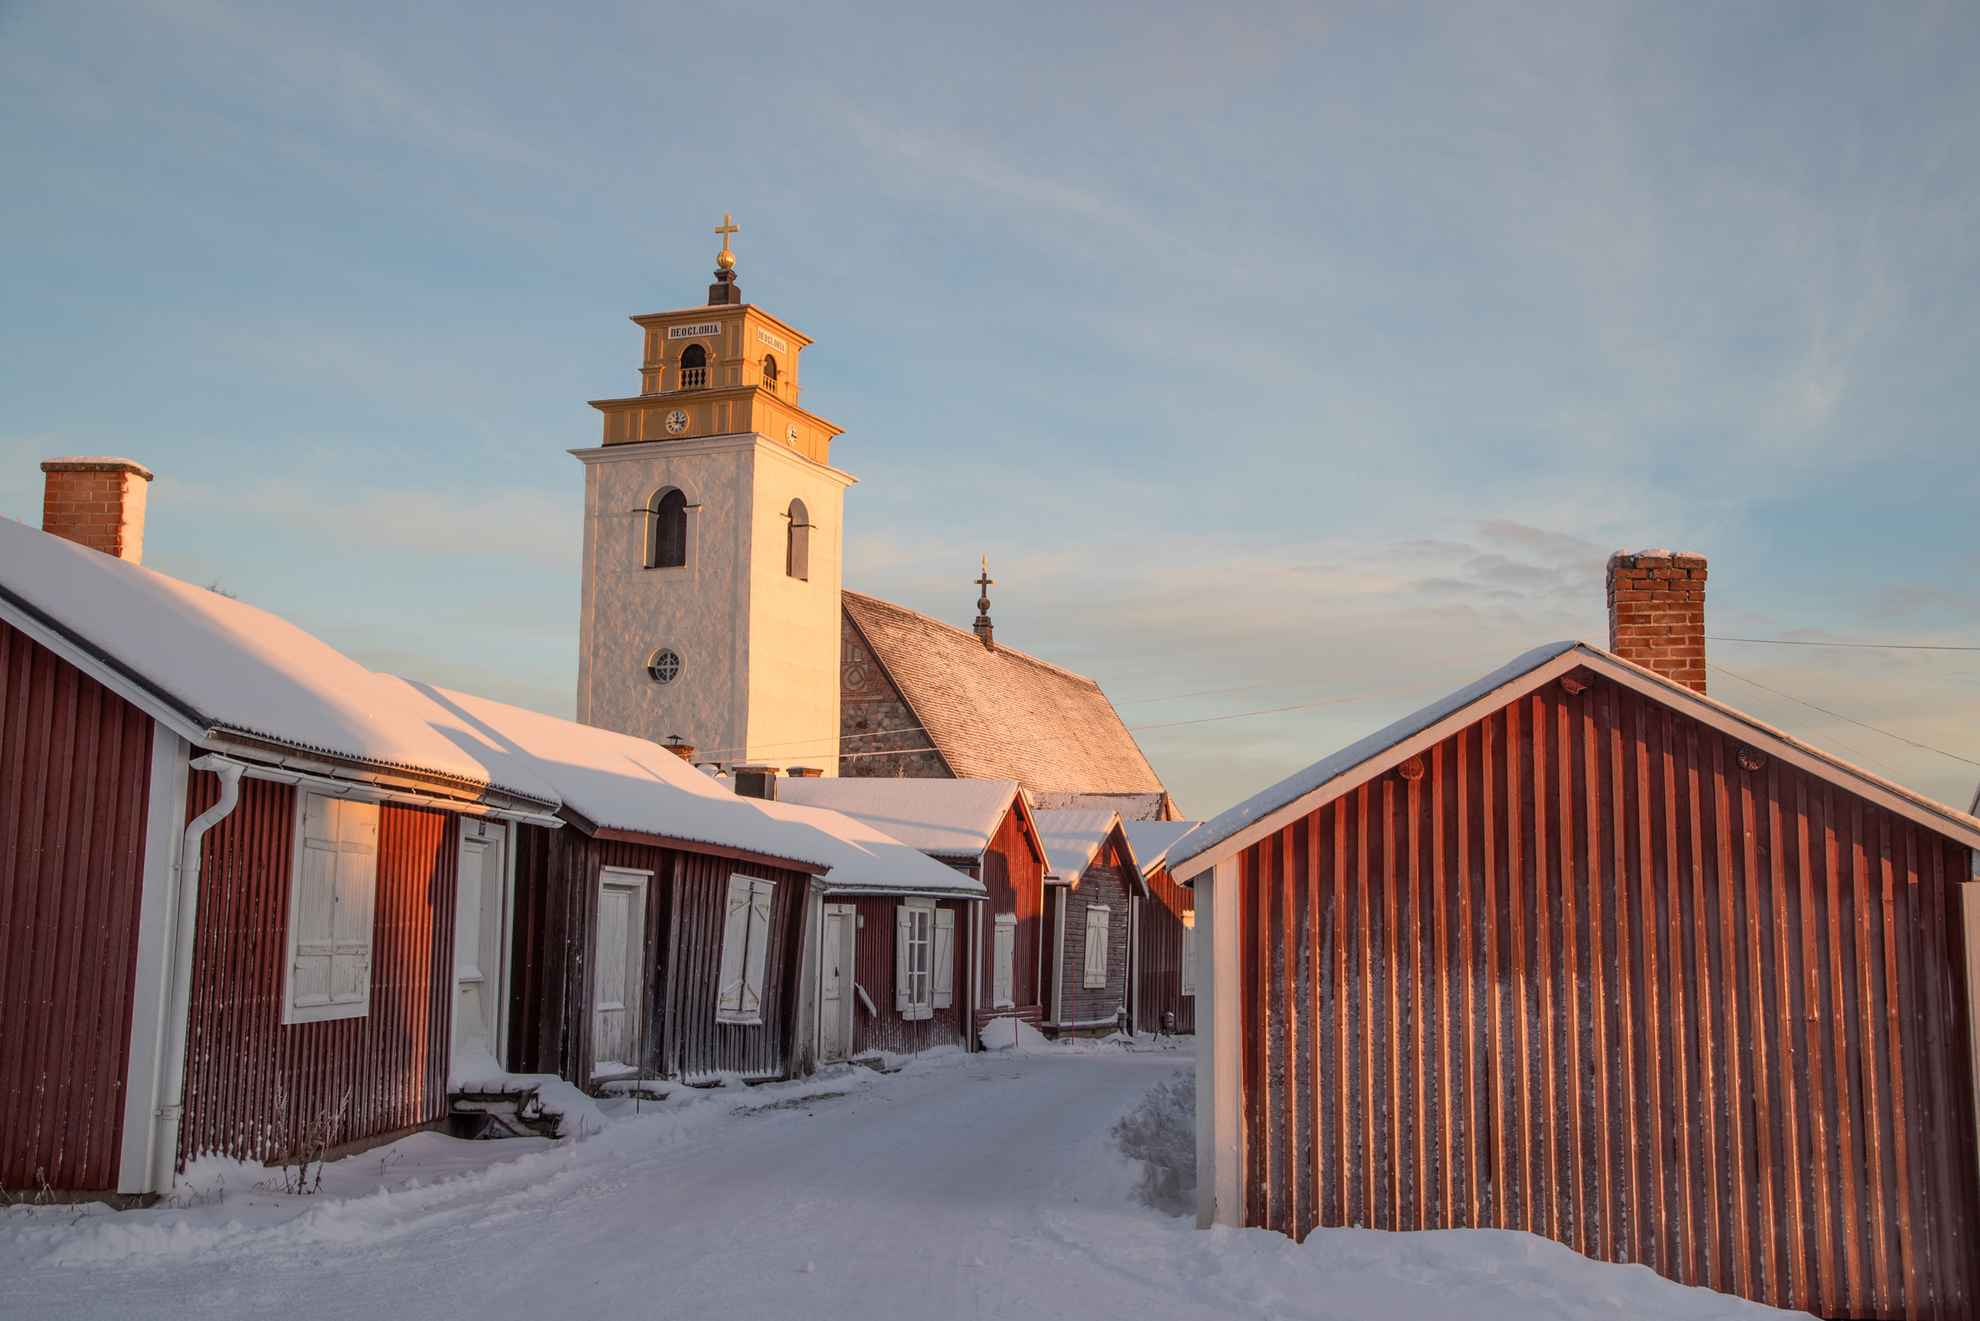 Rode huisjes en de witte kerktoren in de kerkstad Gammelstad tijdens de winter.